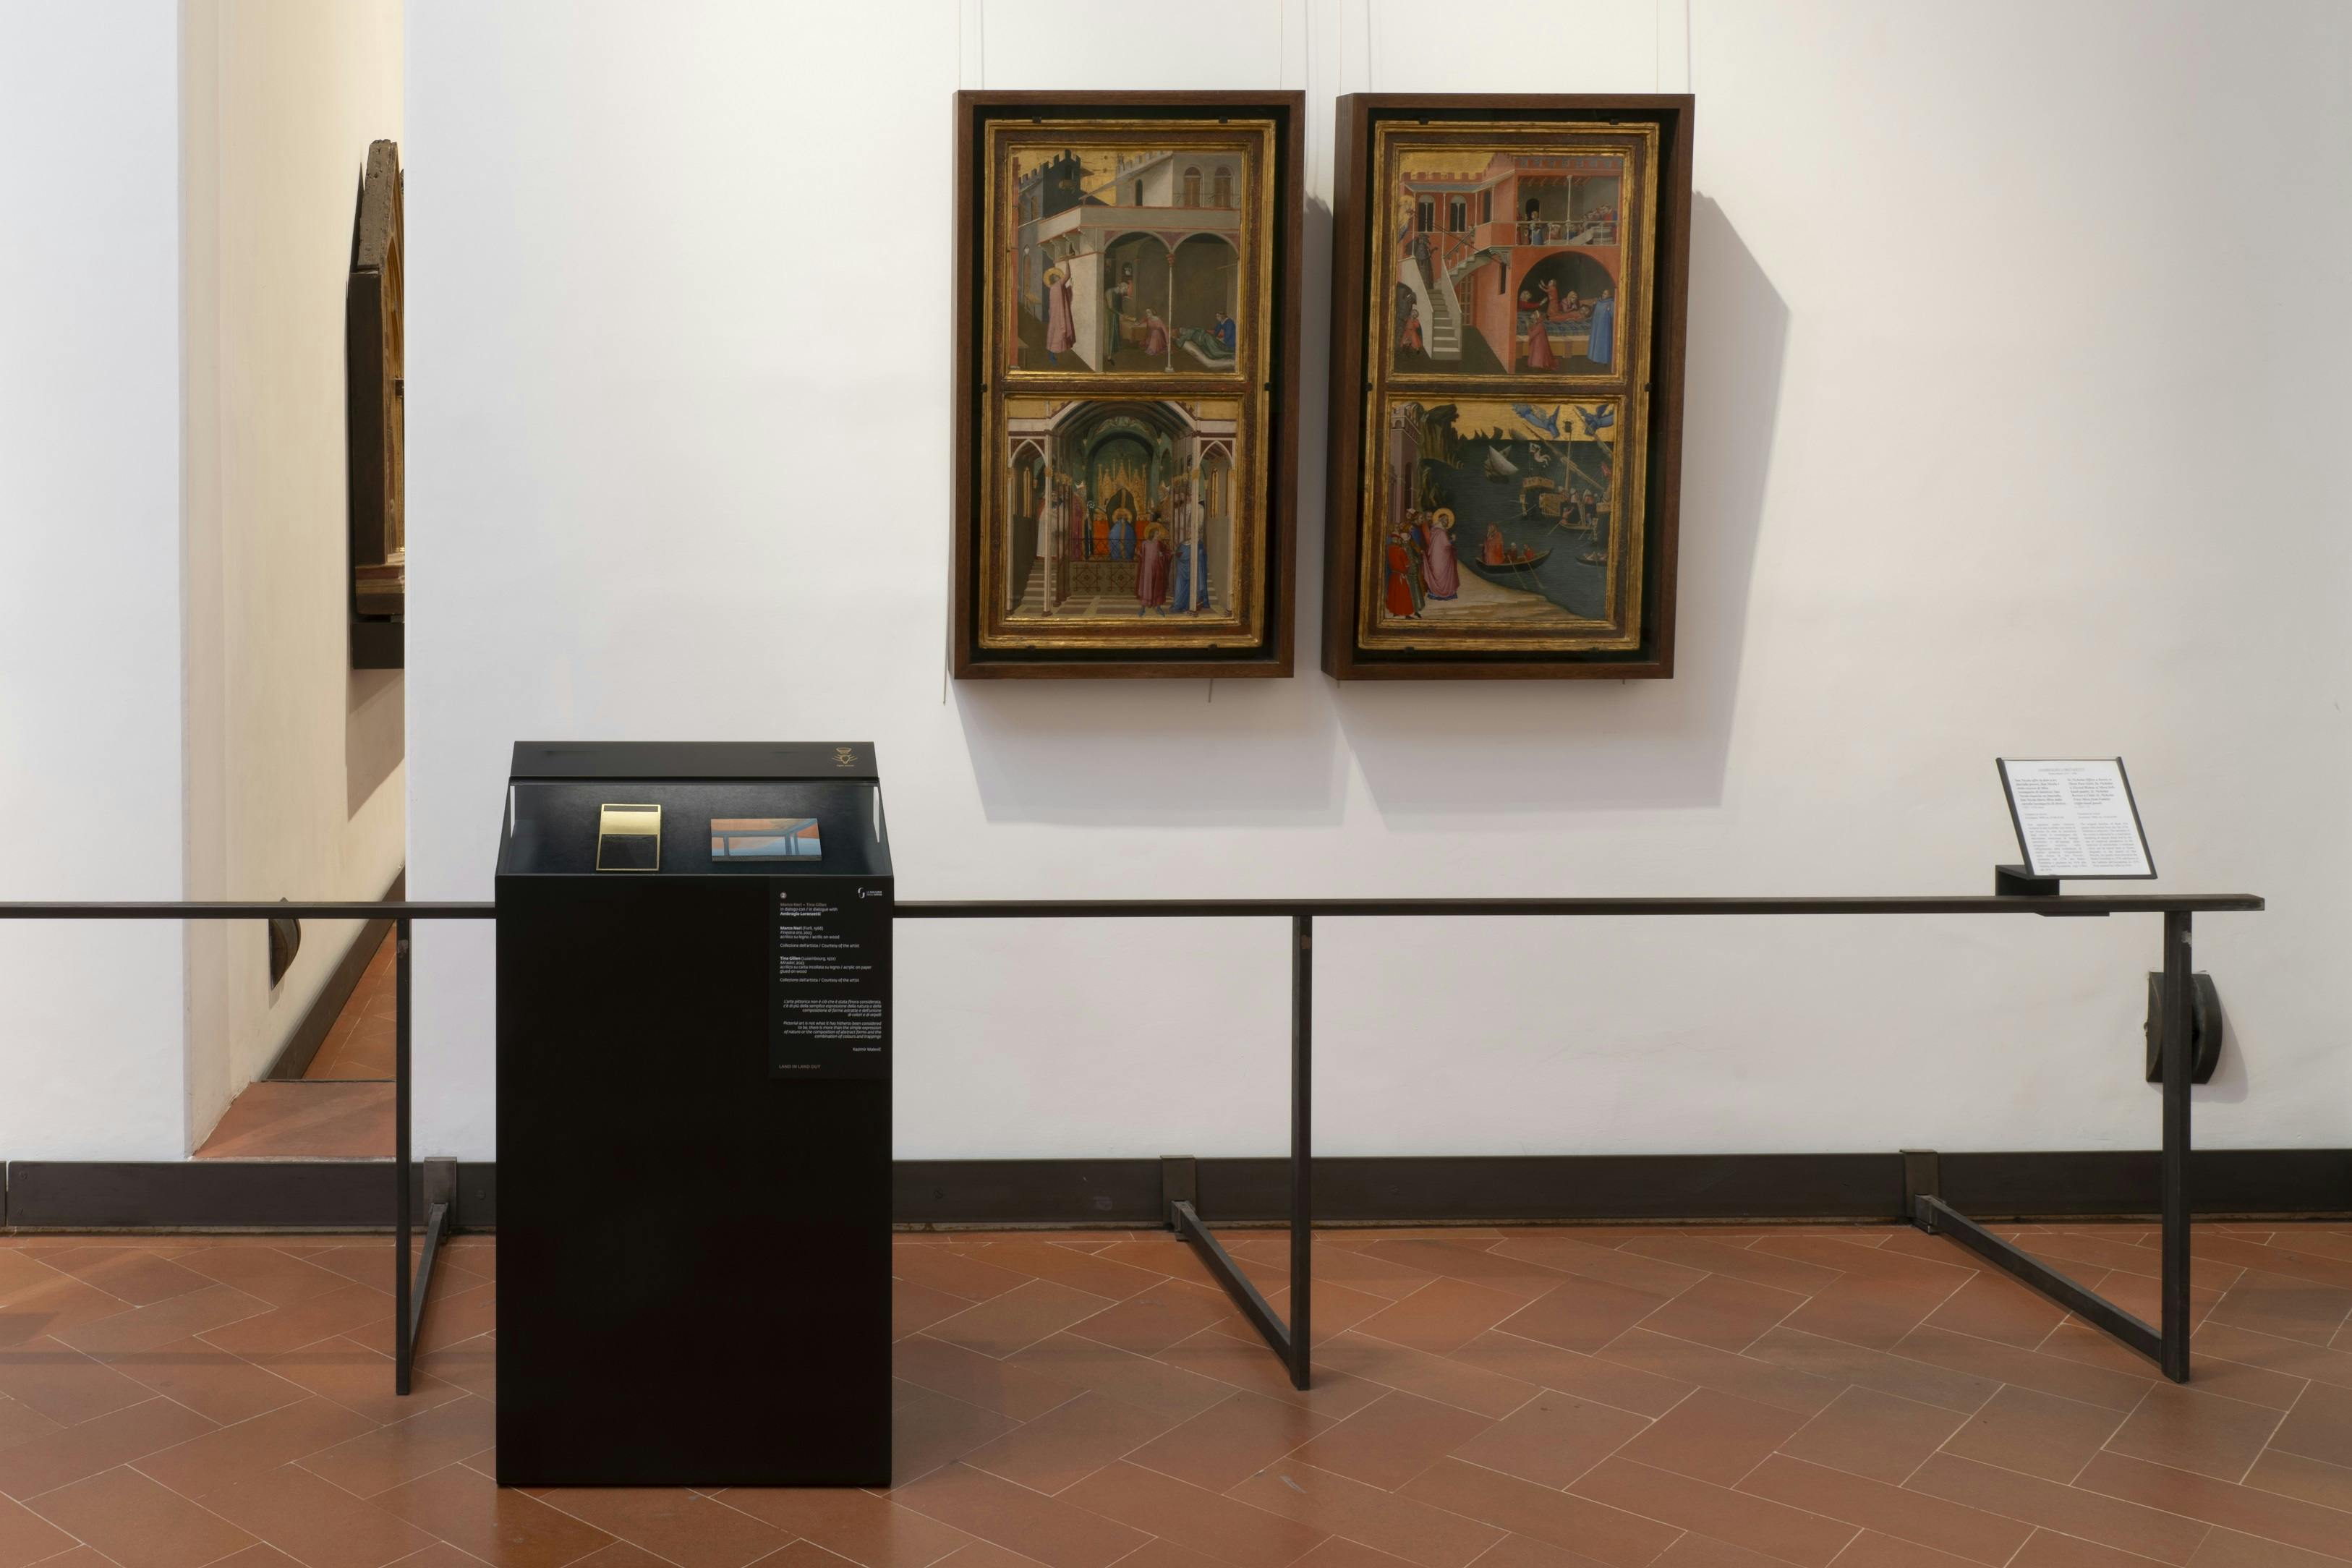 Sala A6, M. Neri e T. Gillen in dialogo comn A. Lorenzetti